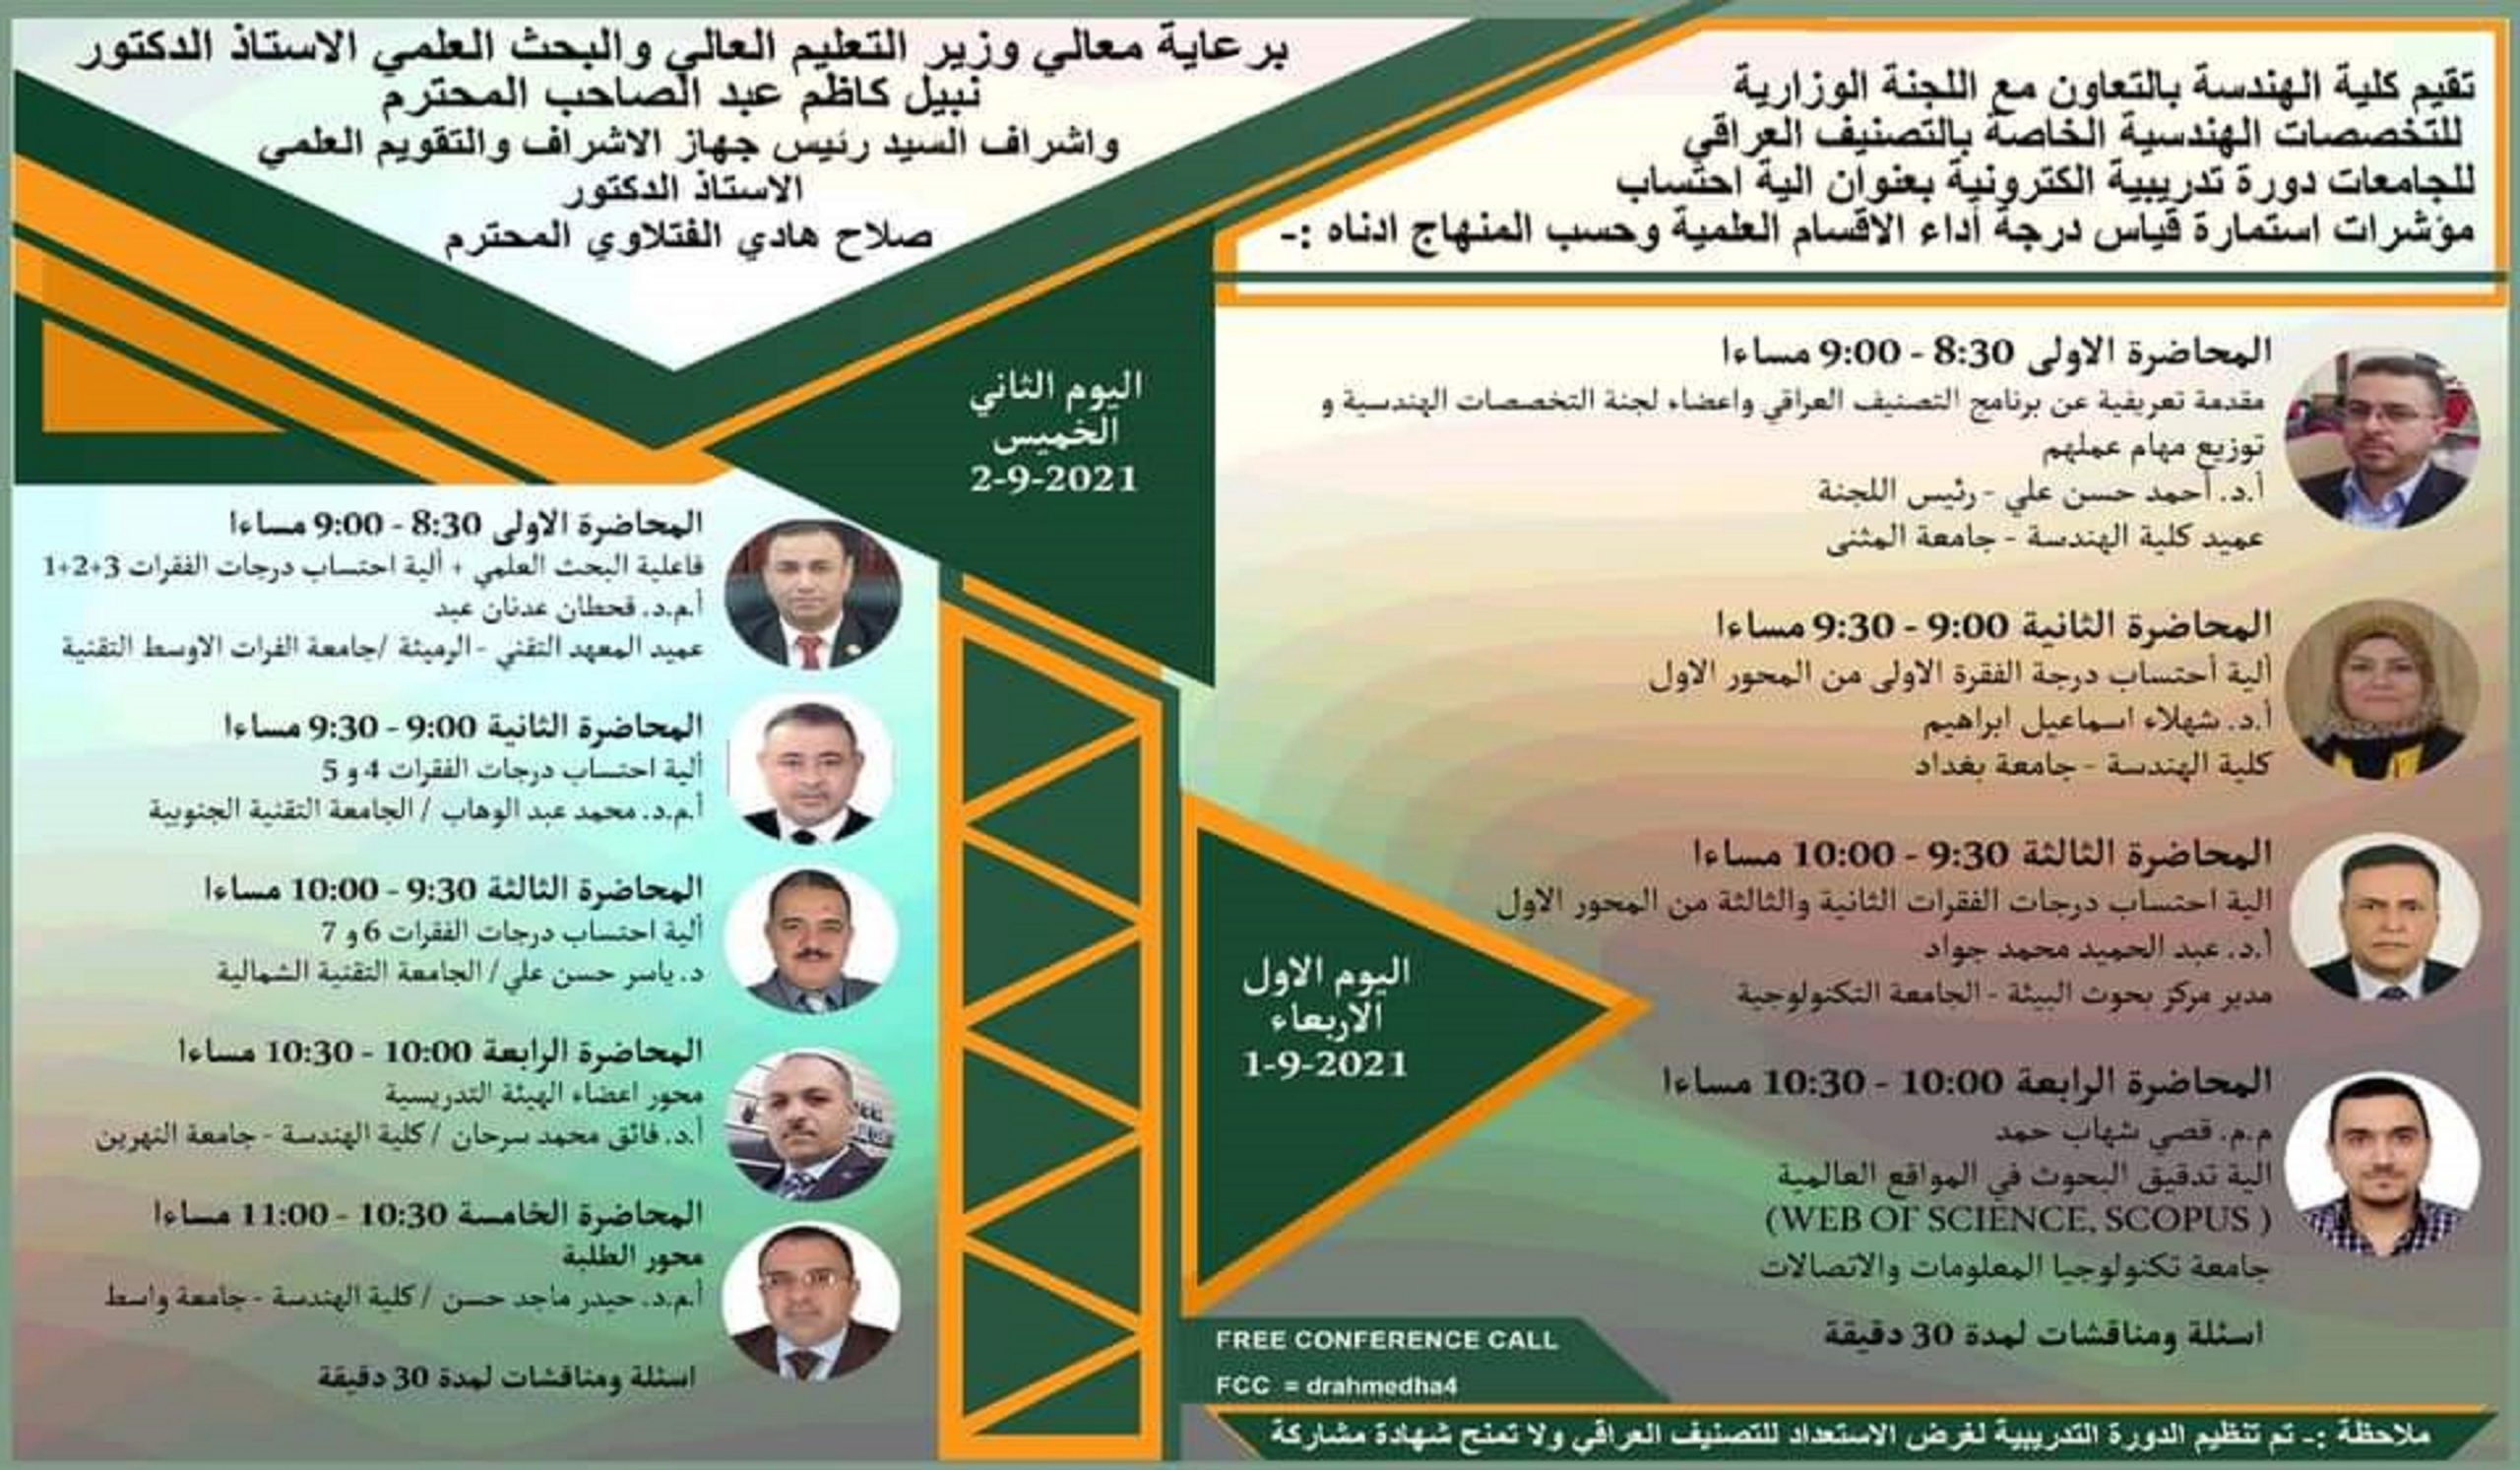 جامعة المثنى كلية الهندسة تتراس اللجنة الوزارية للتخصصات الهندسية للتصنيف العراقي لجودة الجامعات العراقية.